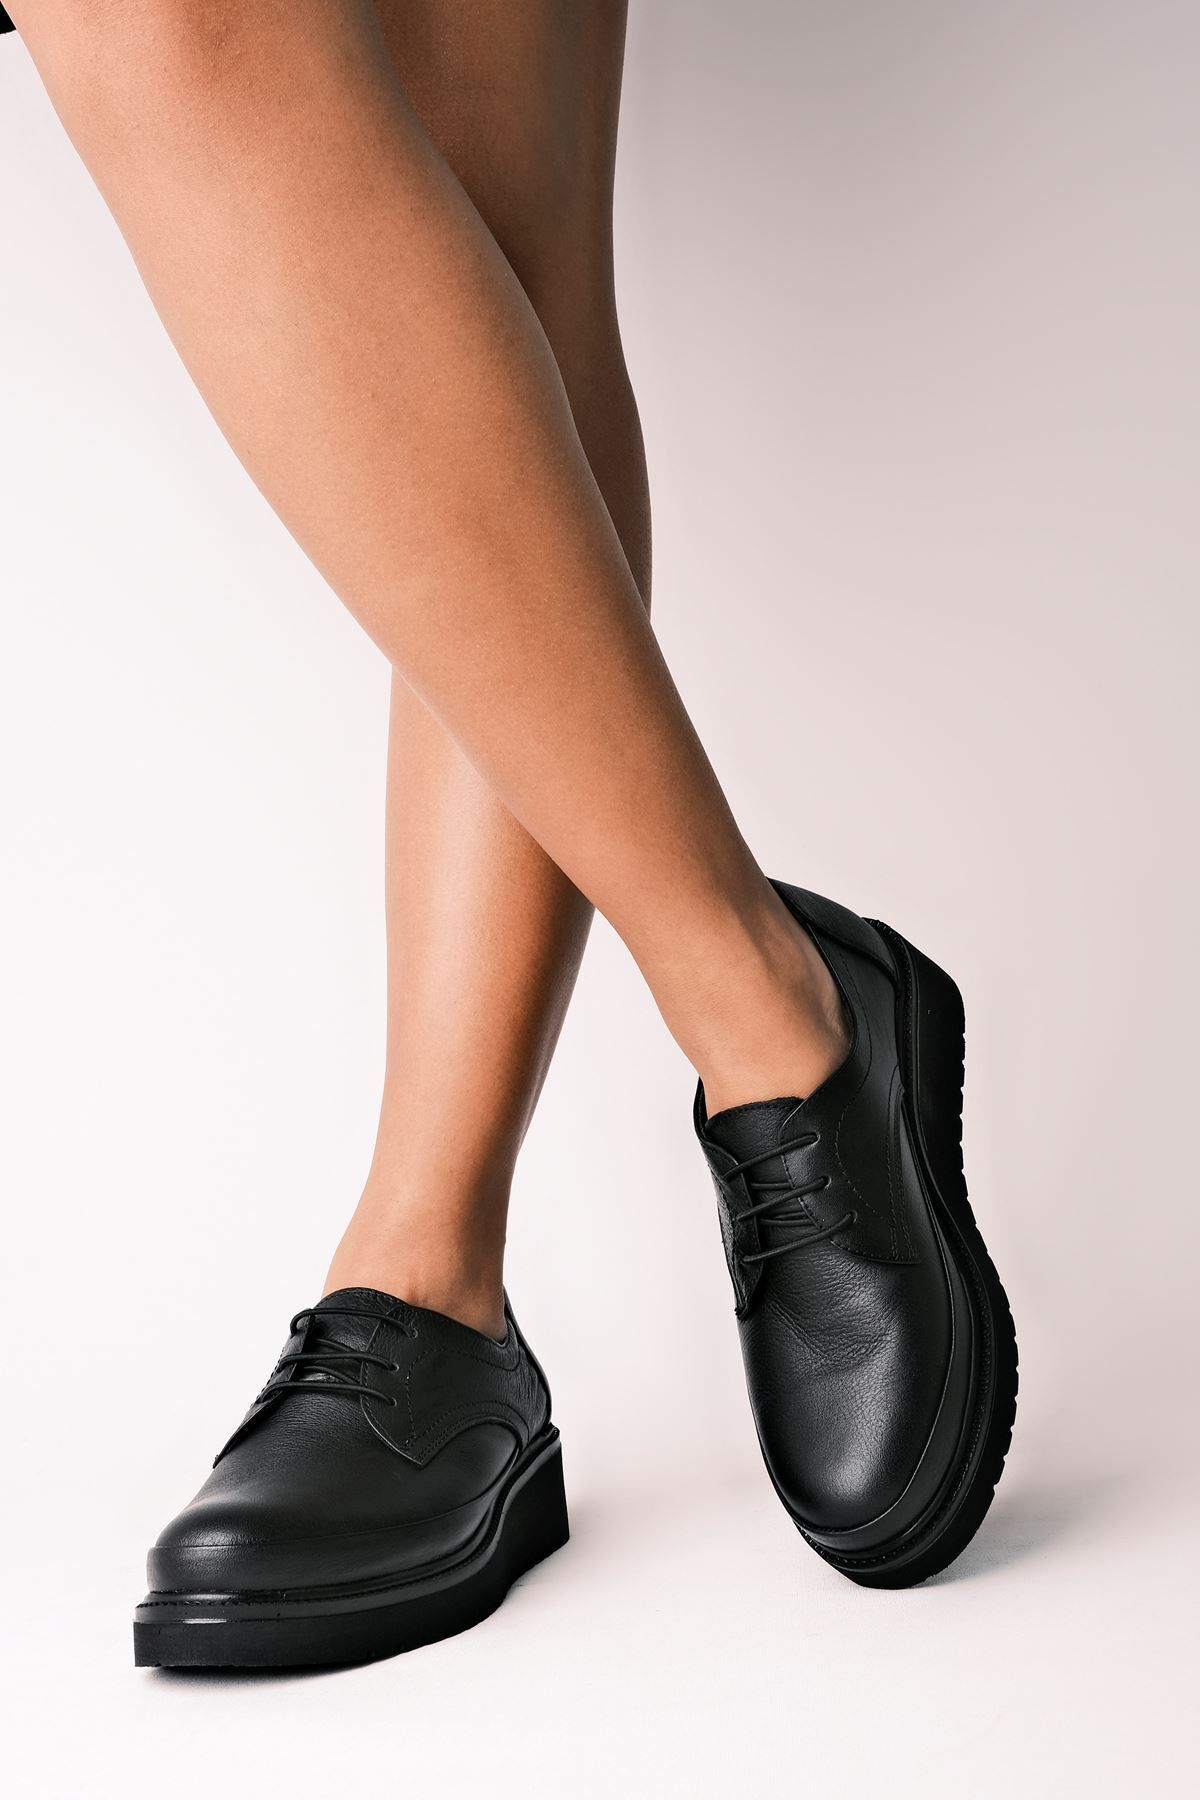 LAL SHOES & BAGS Kadın Hakiki Deri Loafer Oxford Günlük Ayakkabı-siyah